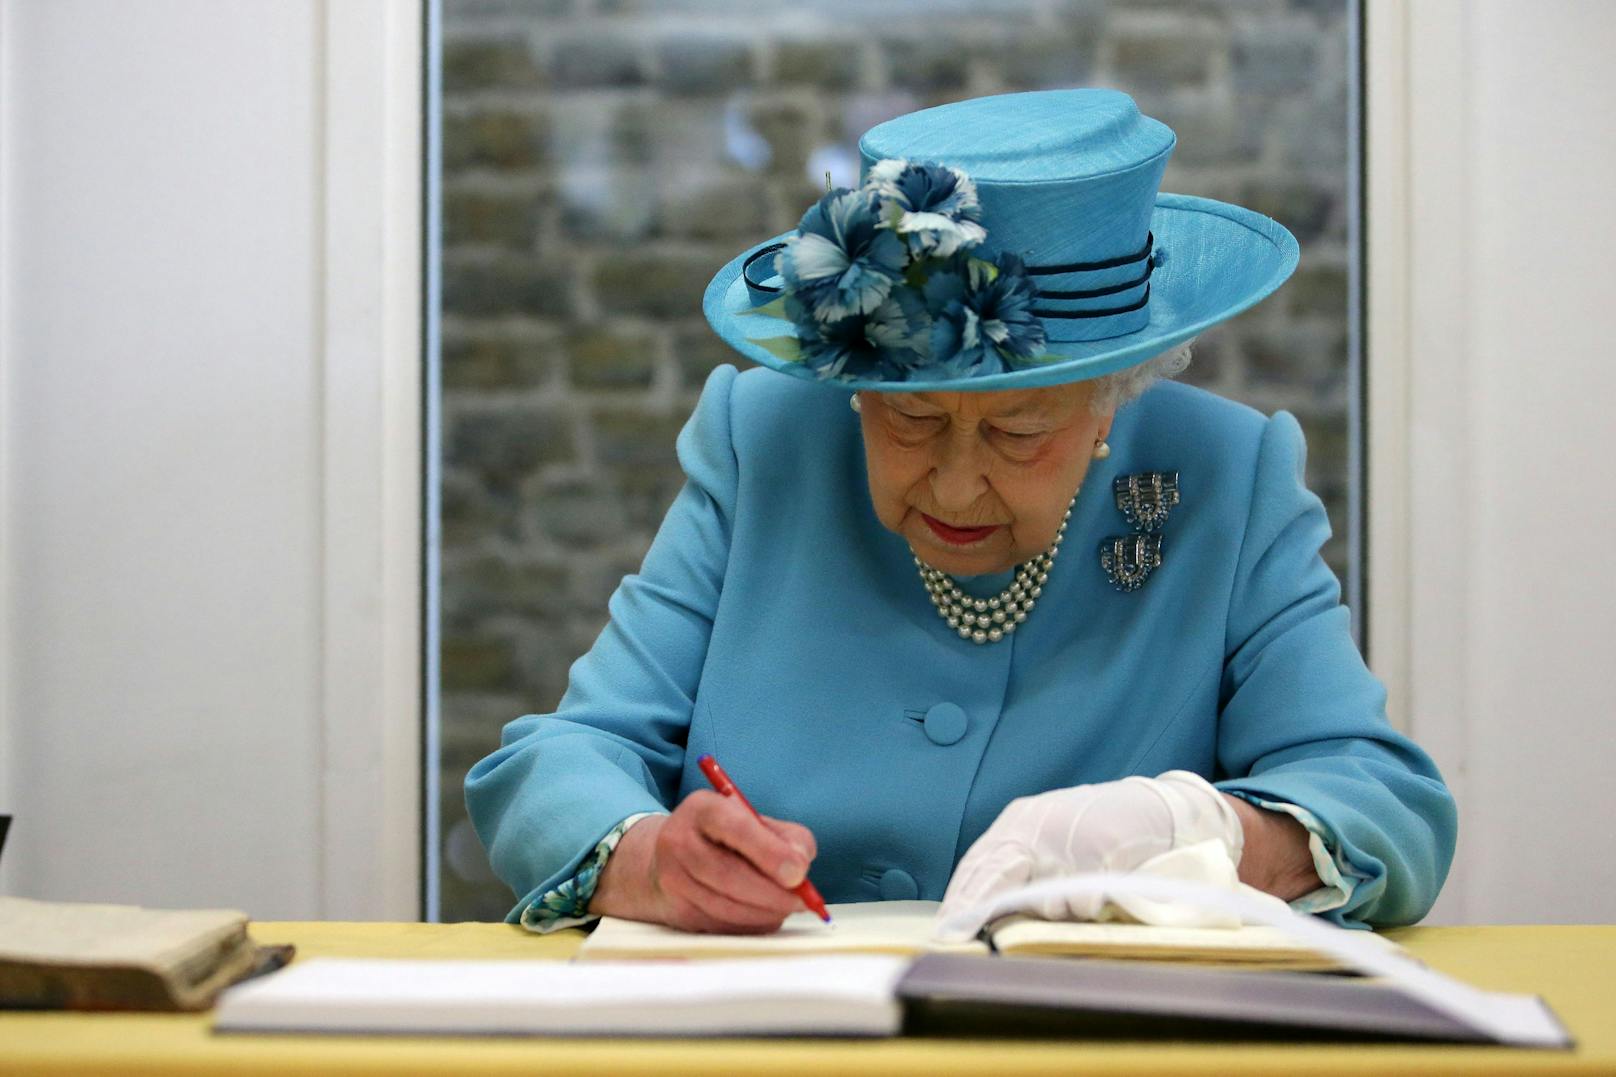 Britin kriegt Telegramm der Queen – 2 Tage nach deren Tod